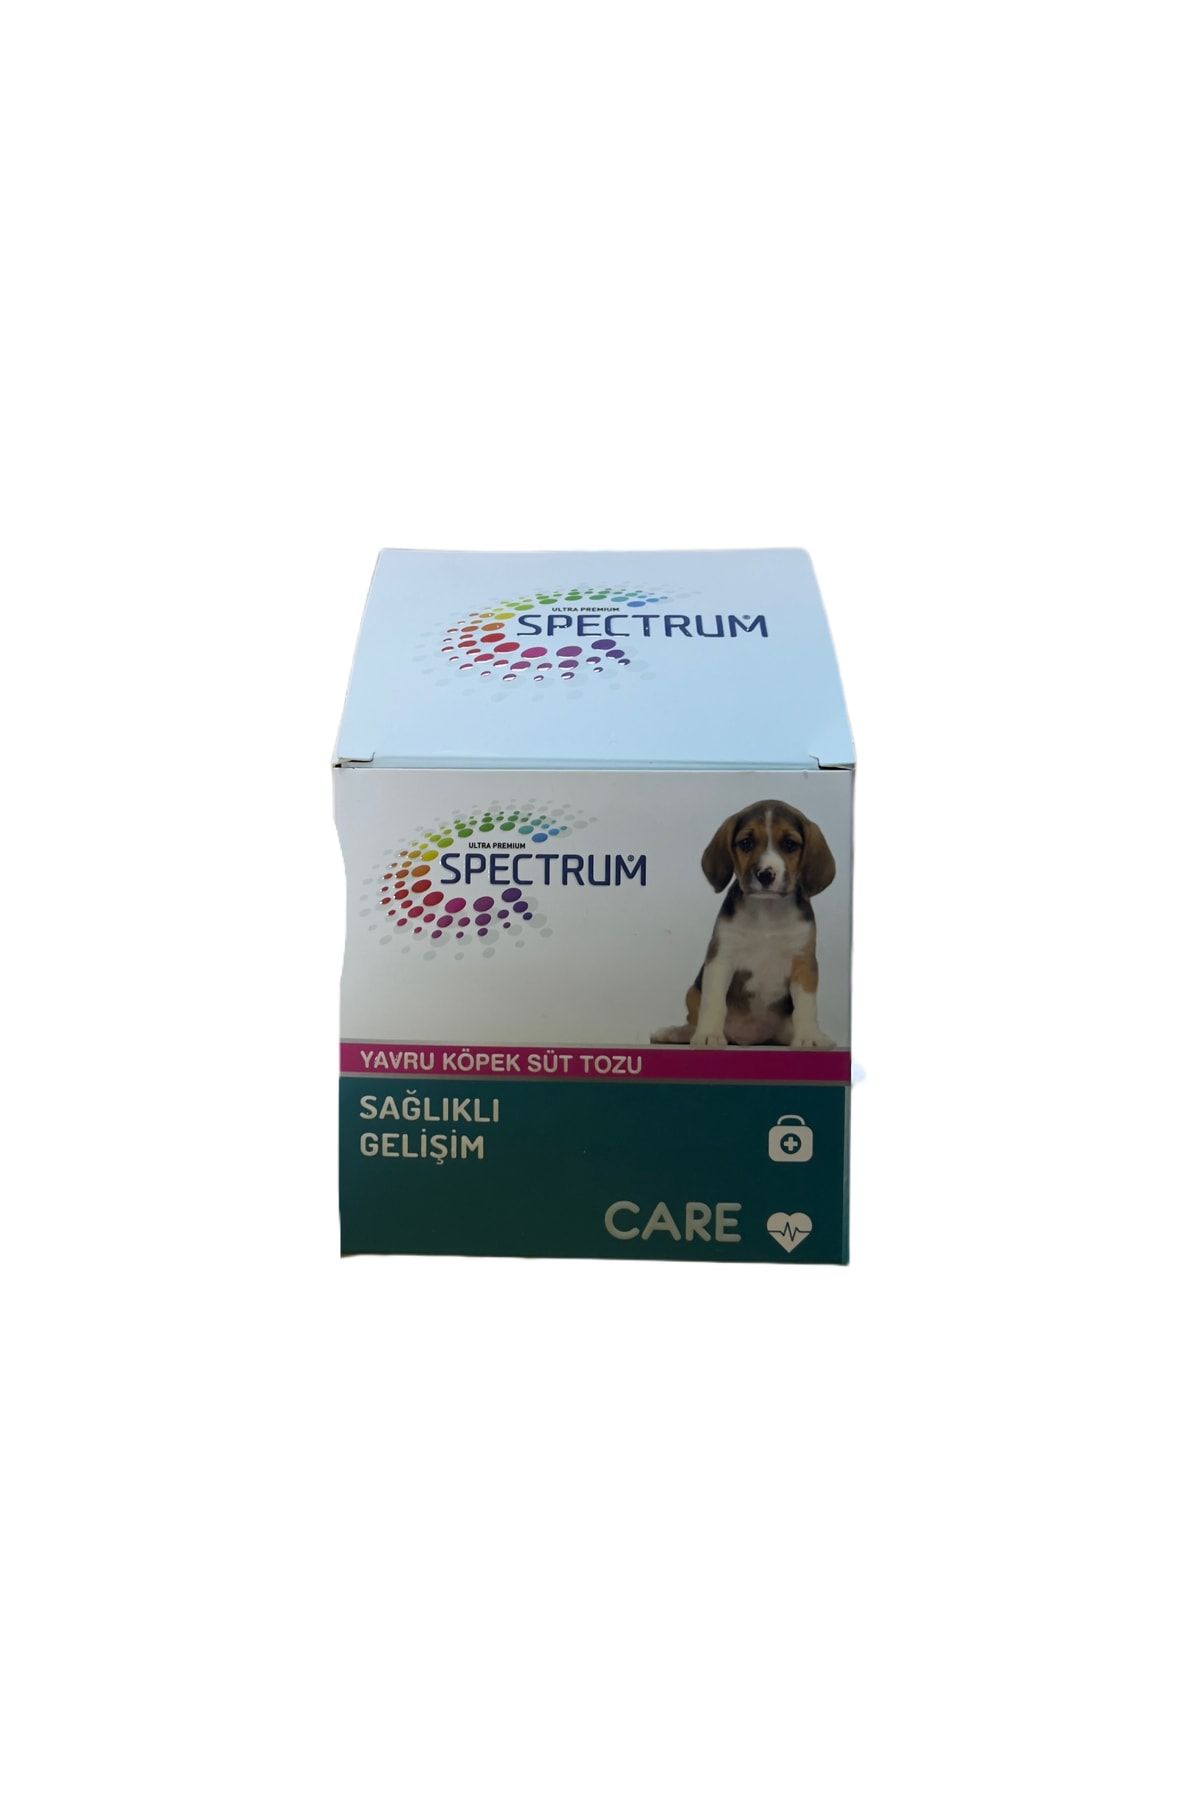 Spectrum Care Yavru Köpek Süt Tozu 150 Gr